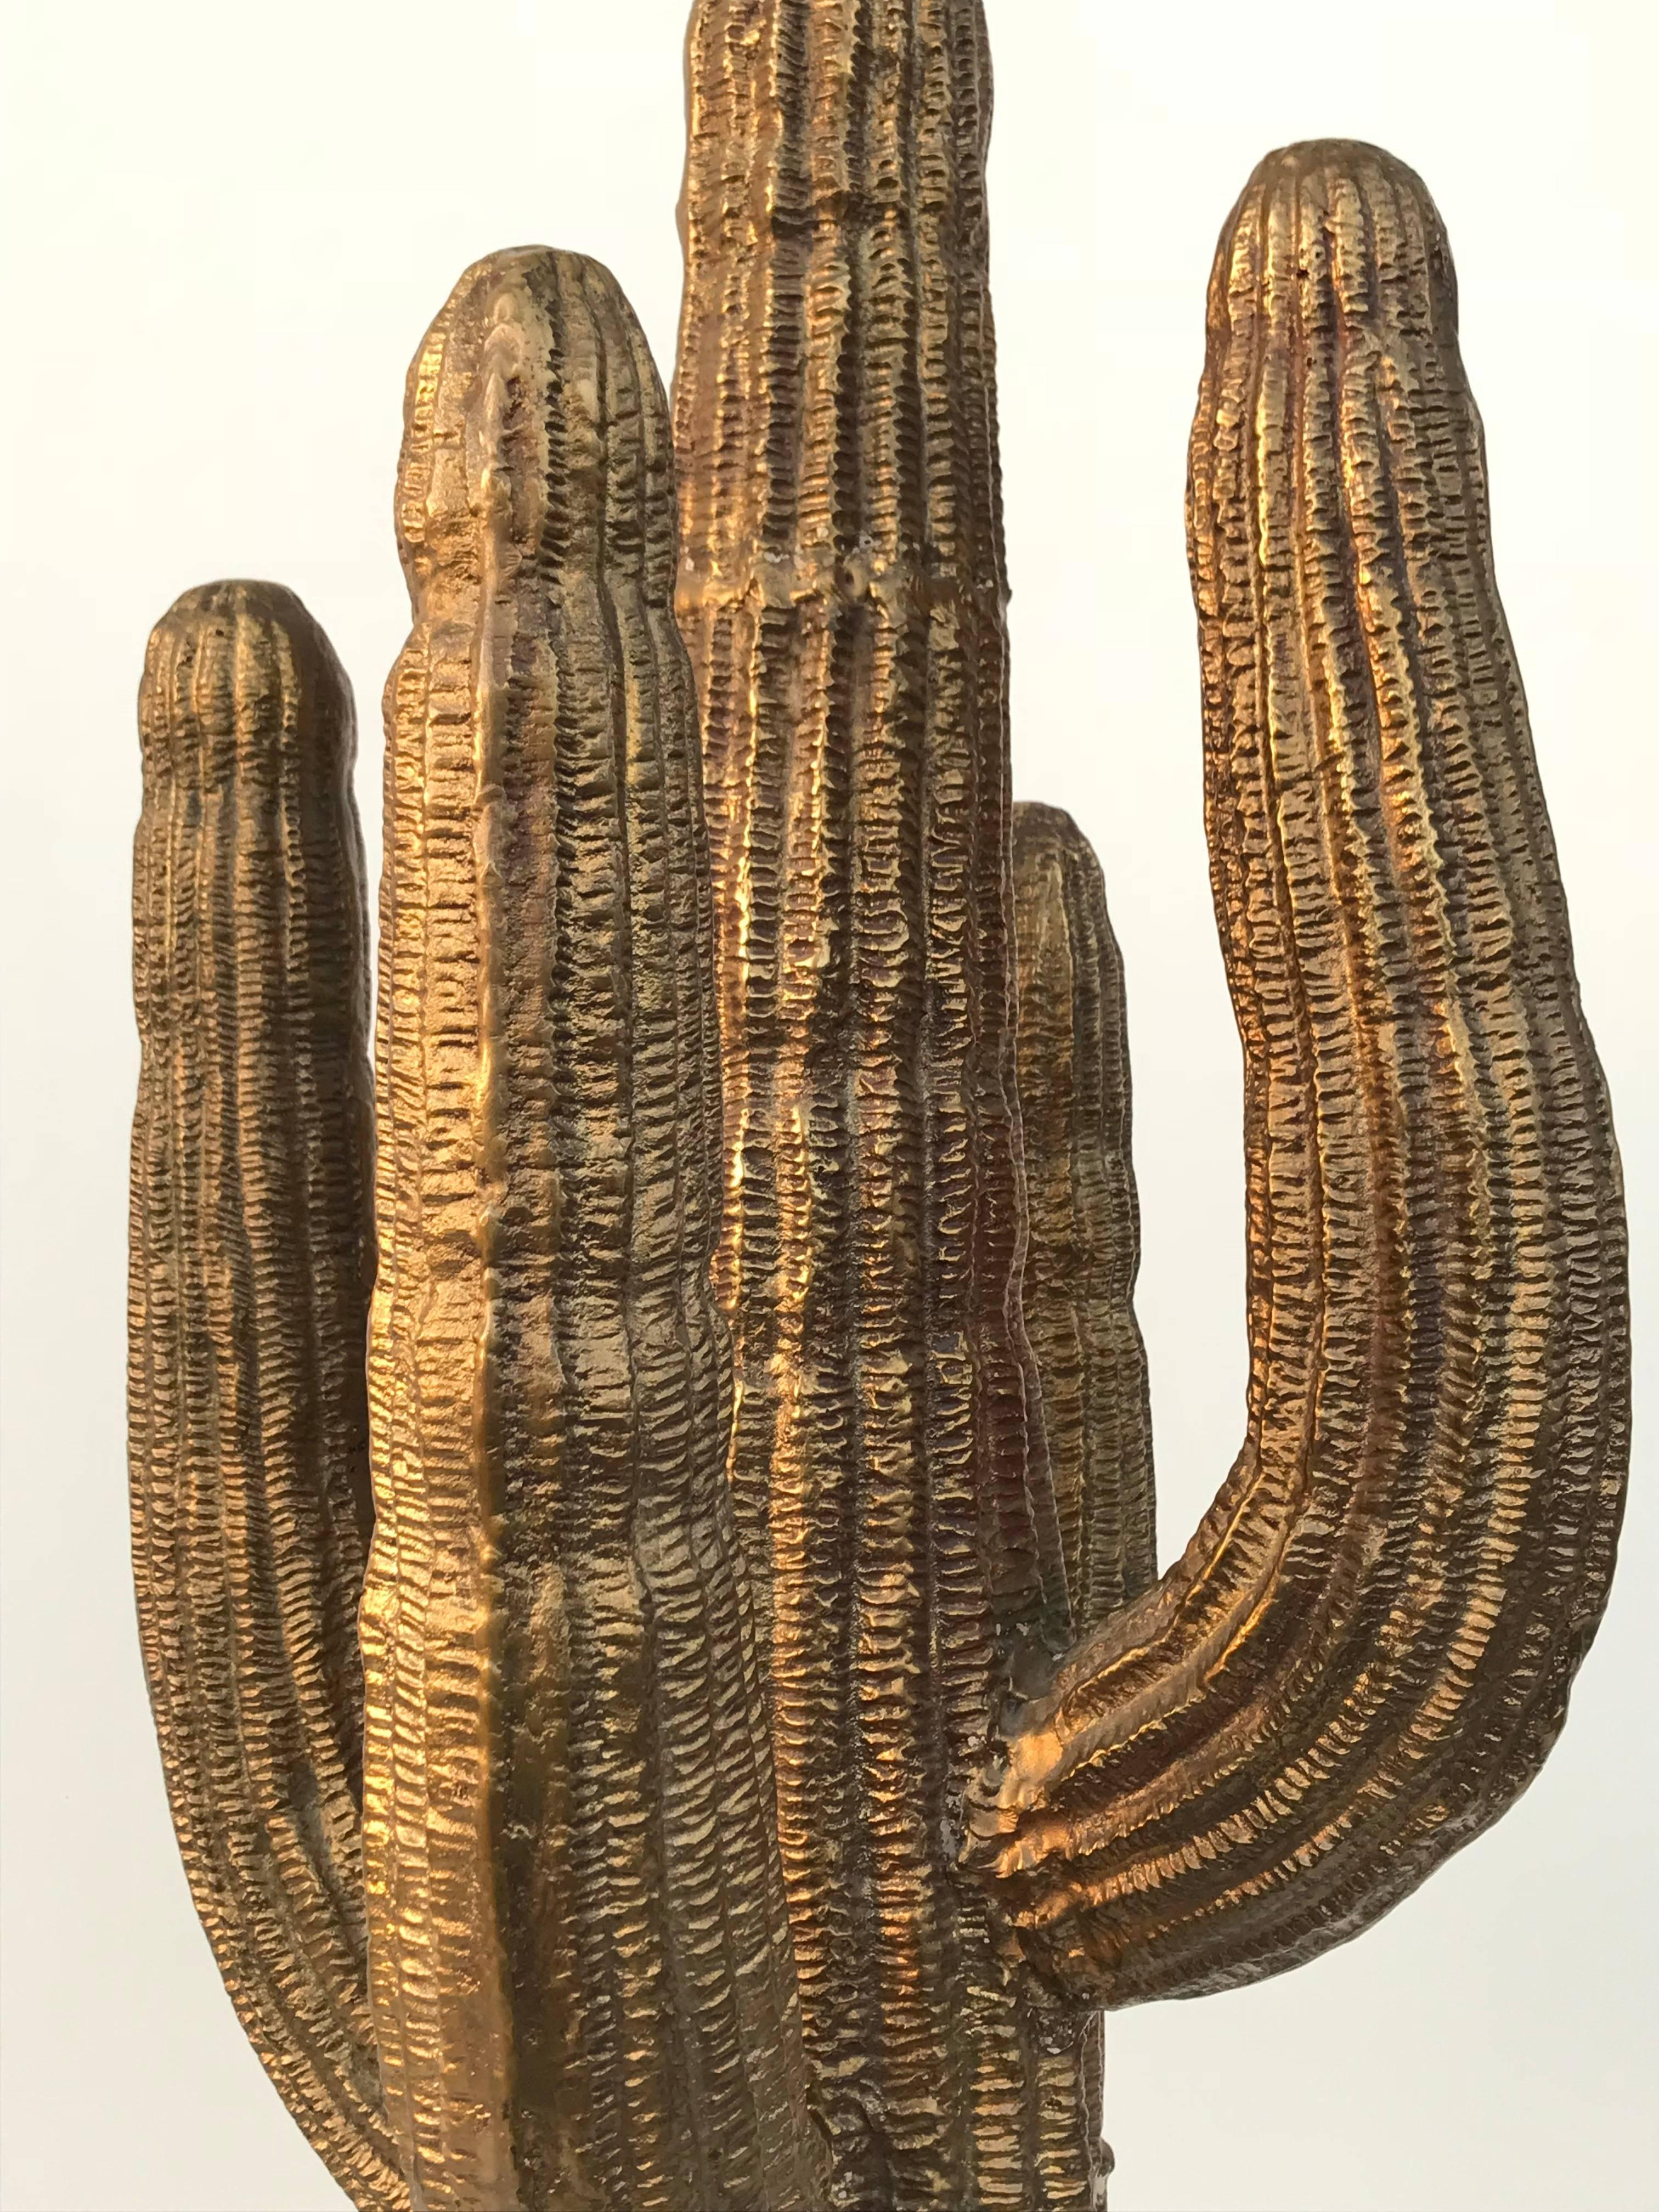 Patinated Brass Saguaro Cactus Sculpture